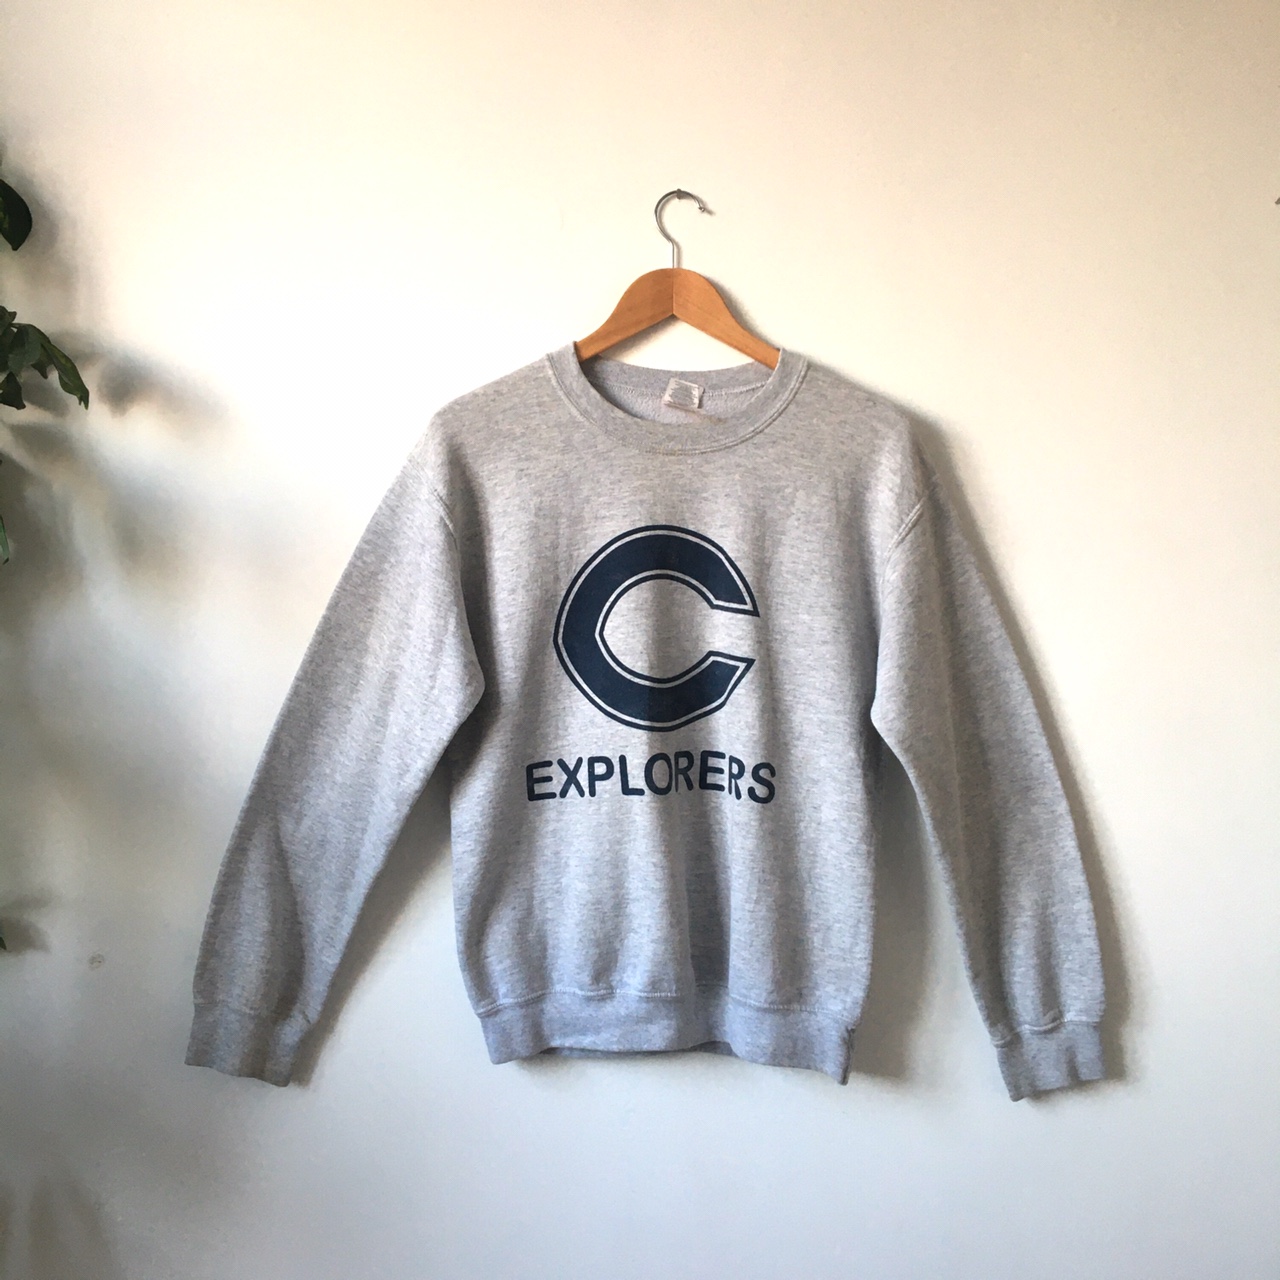 Columbus Explorers Sweatshirt (s) - Maerl Vintage